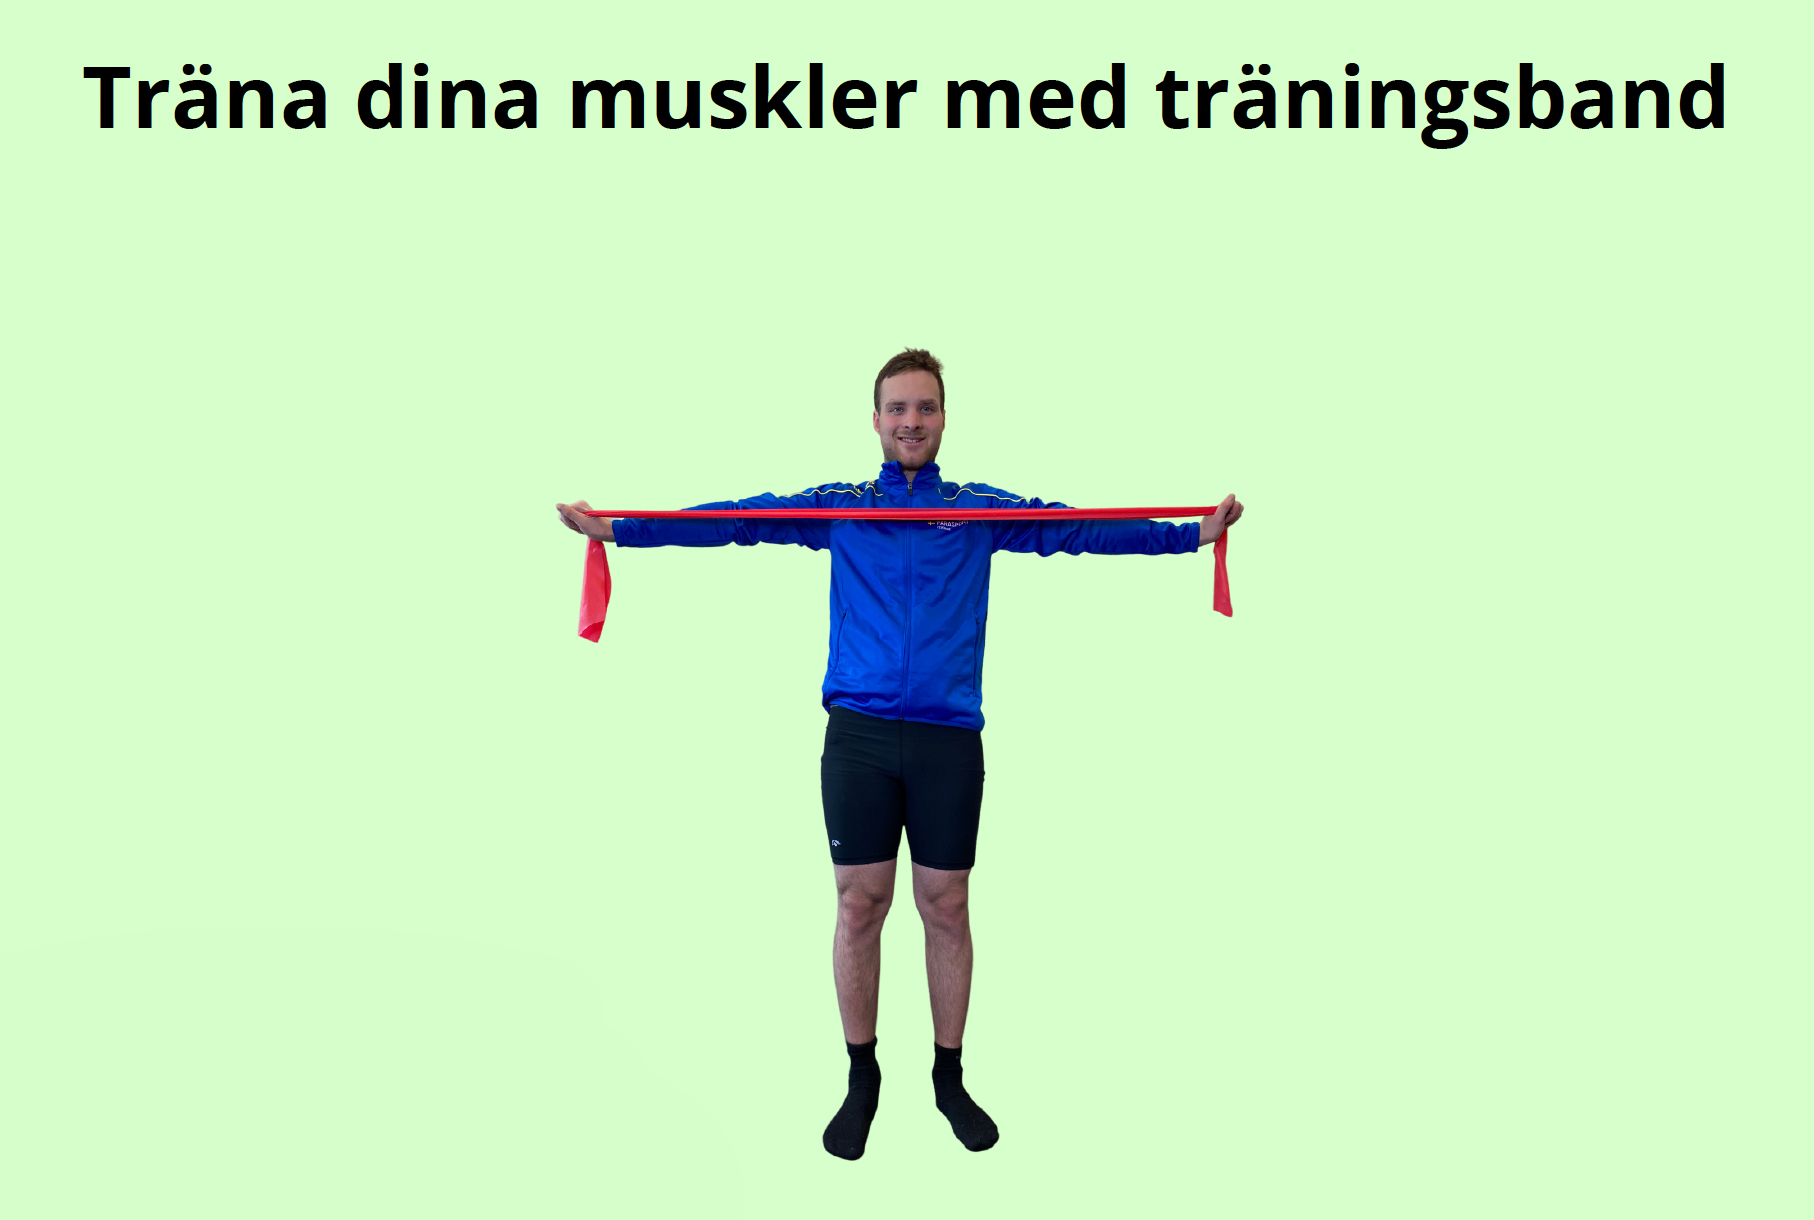 Text: Träna med träningsband. Bild på en man som står upp med ett träningsband utsträckt framför sig.